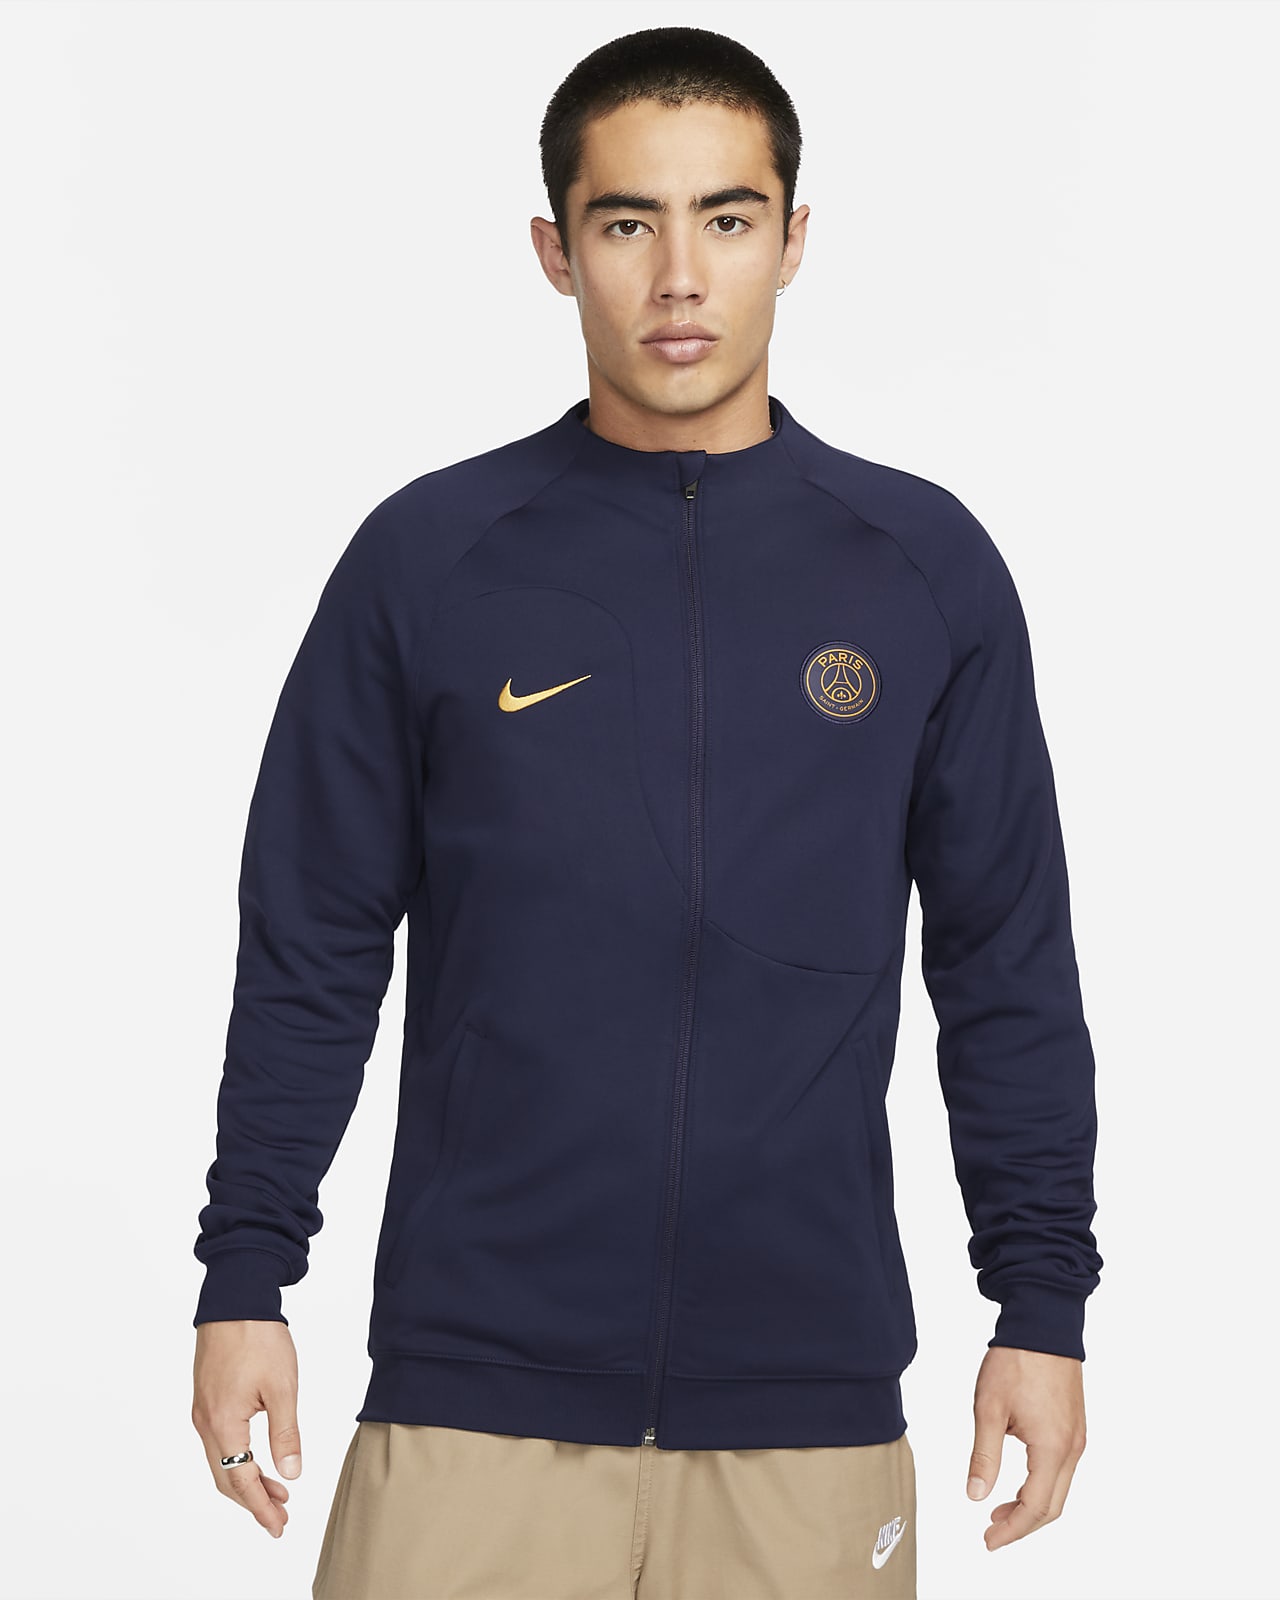 Paris Saint-Germain Academy Pro Home Men's Nike Soccer Graphic Jacket